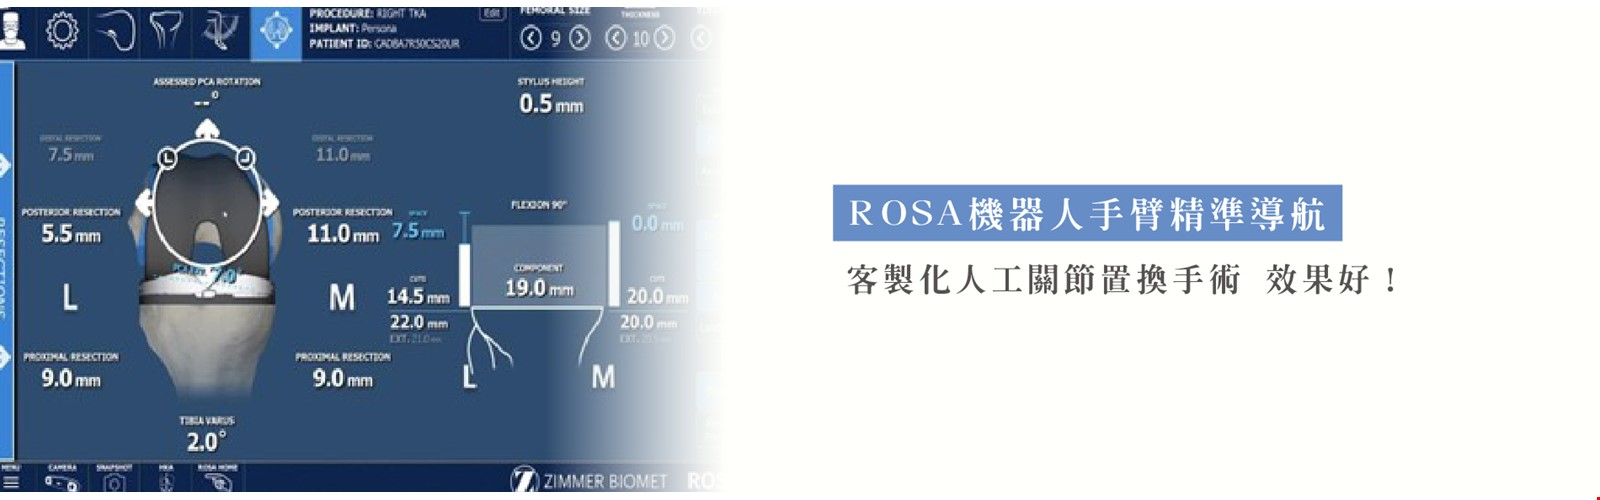 ROSA機器人手臂精準導航  客製化人工關節置換手術 效果好！